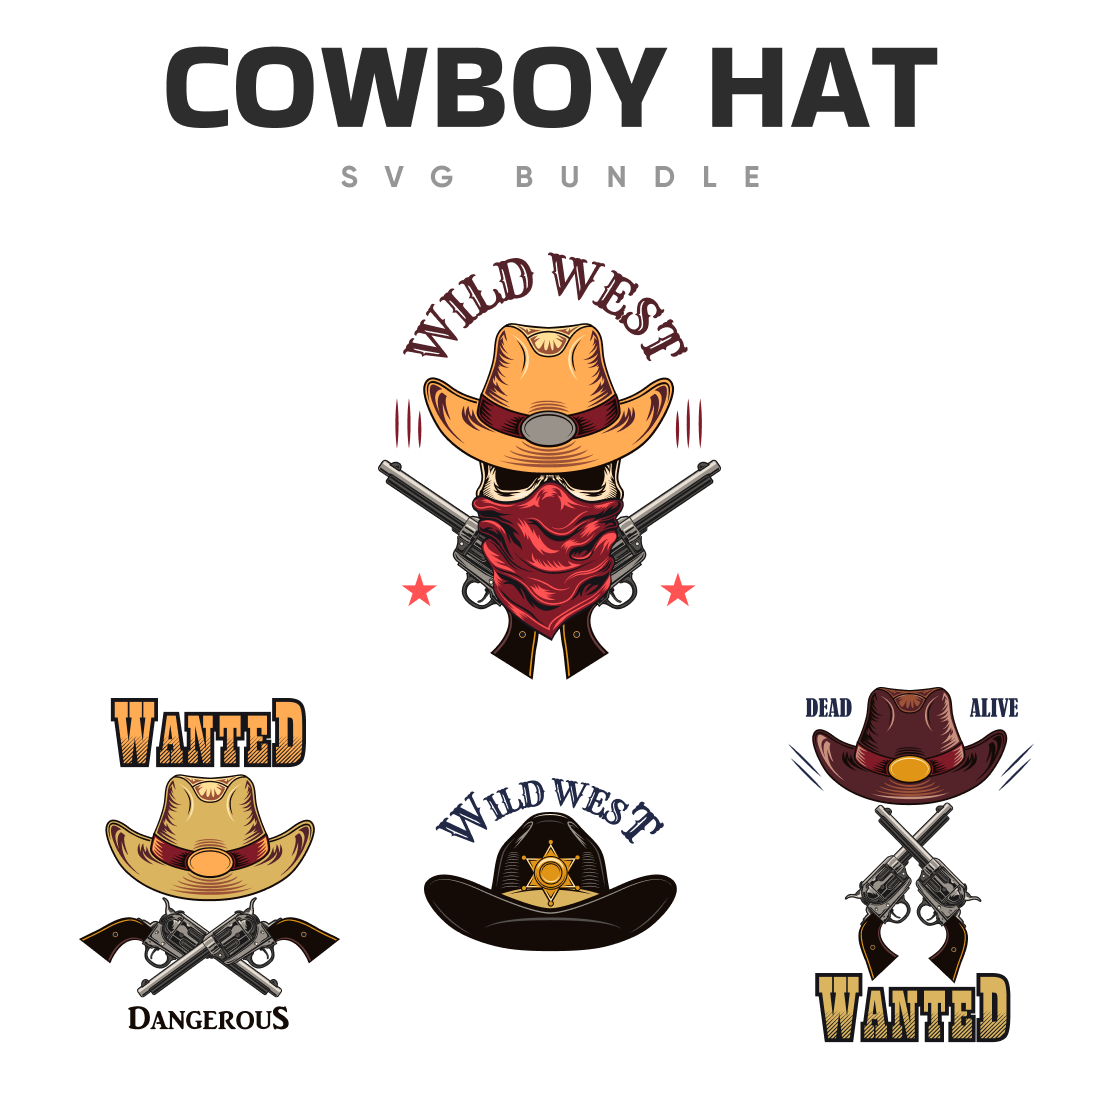 Cowboy hat svg bundle.